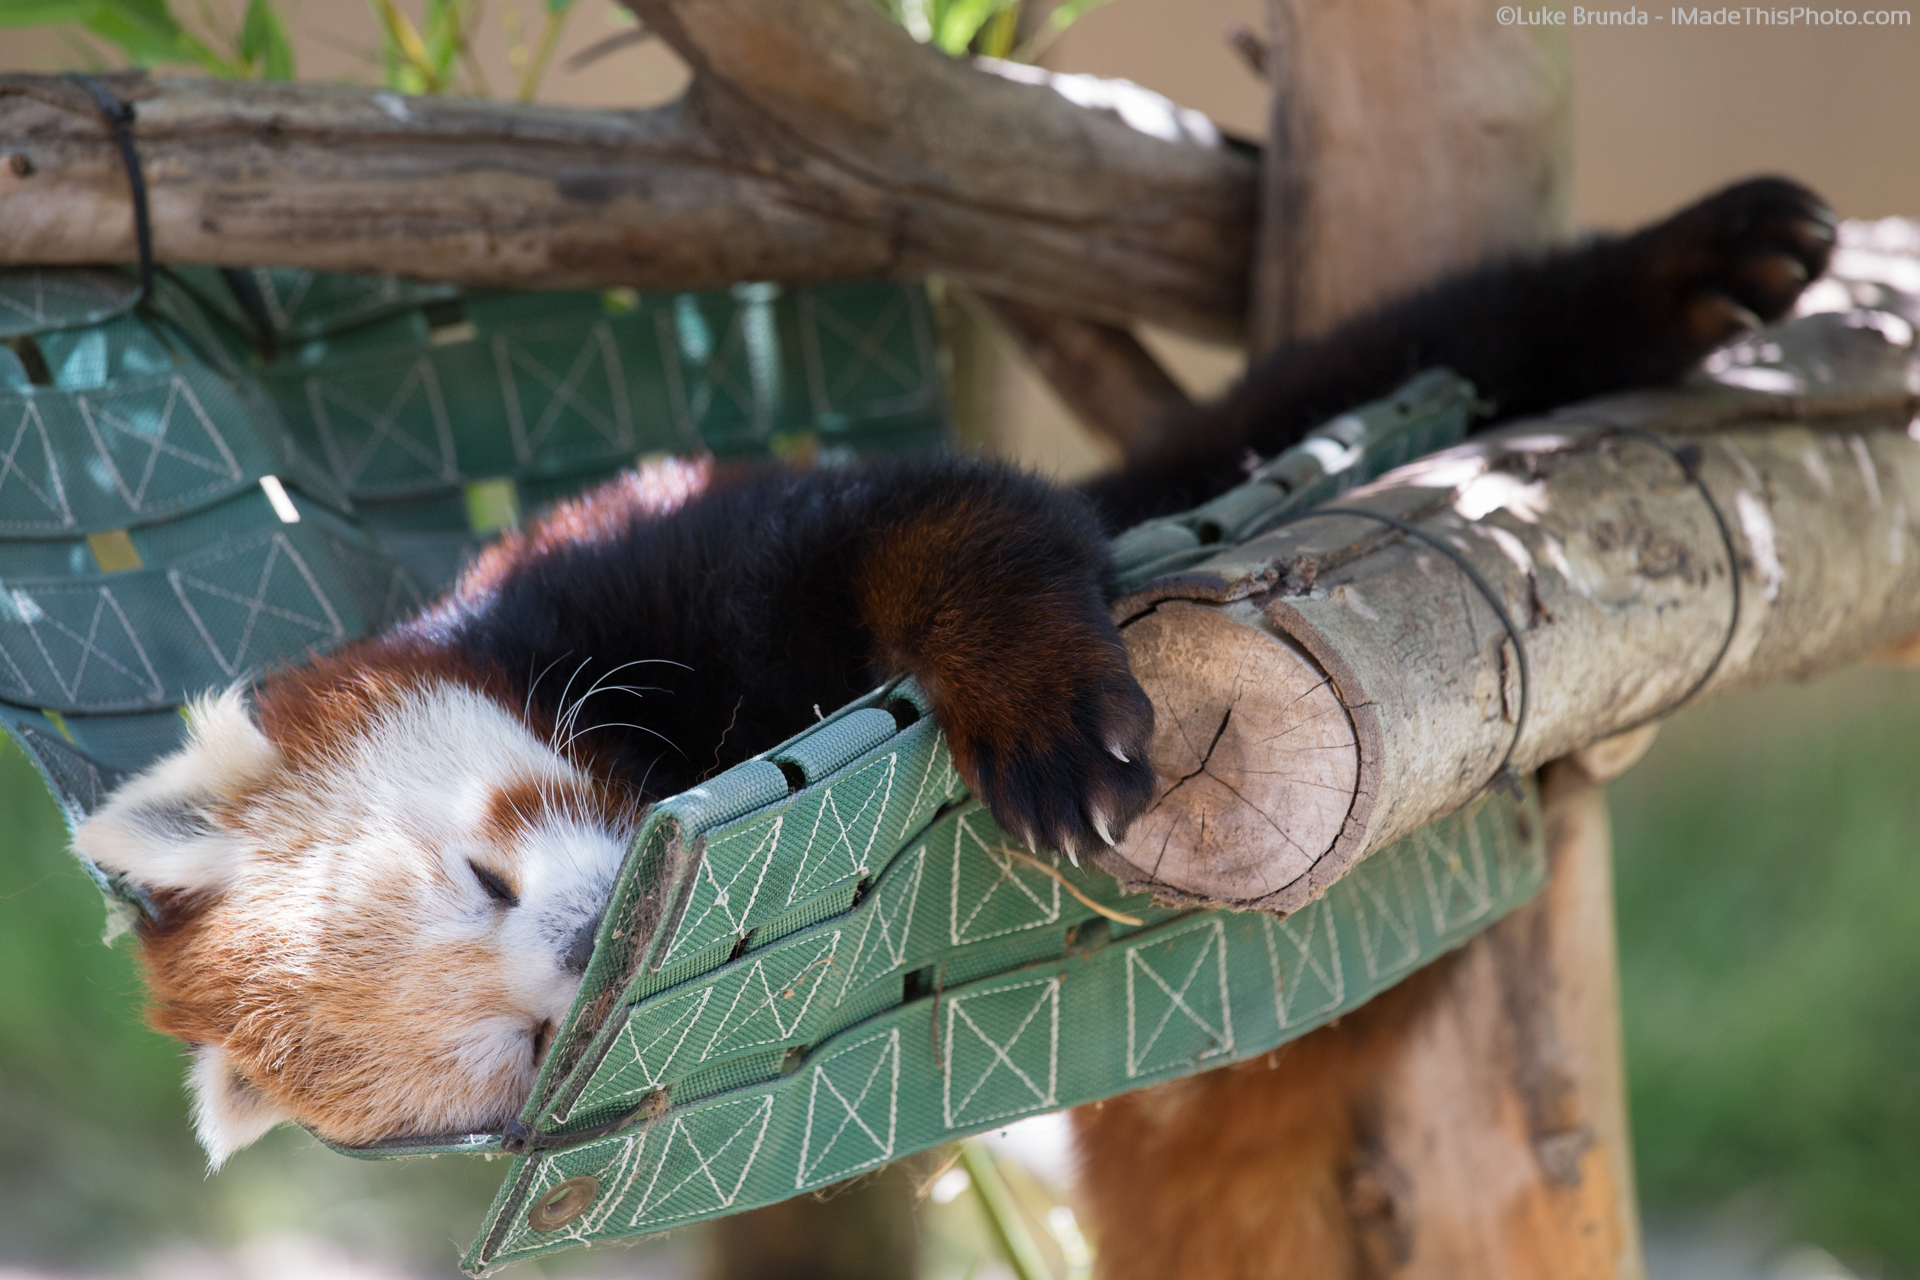 Red panda napping